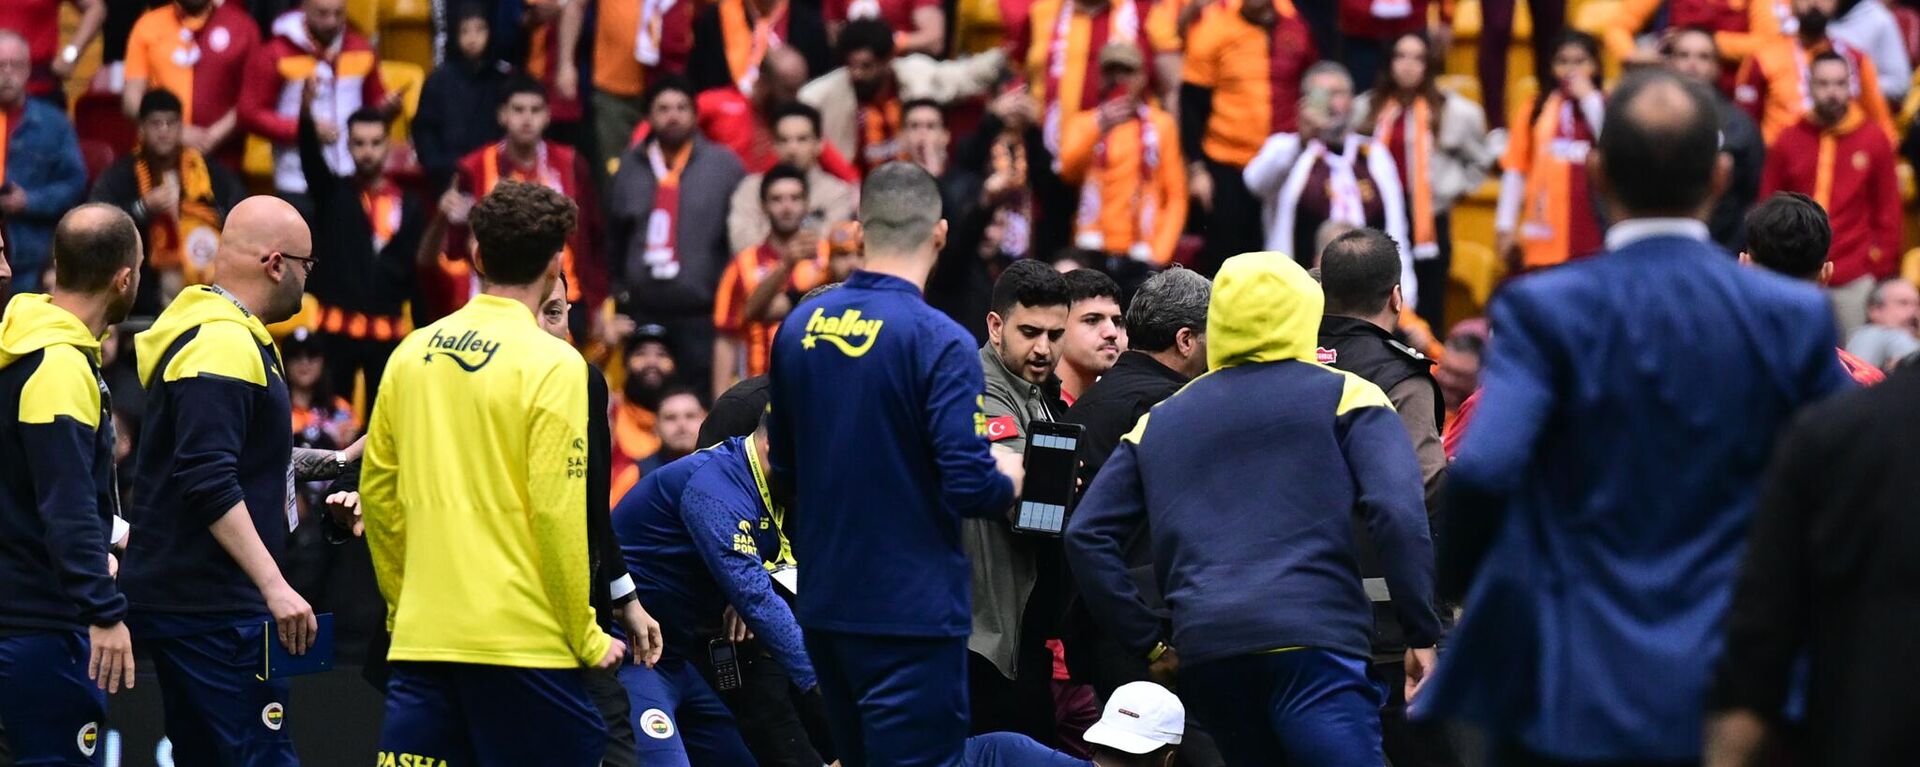 Trendyol Süper Lig'in 37. haftasında Galatasaray ile Fenerbahçe arasında oynanacak derbi müsabakası öncesinde oyuncular arasında gerginlik yaşandı. ( Abdulhamid Hoşbaş - Anadolu Ajansı ) - Sputnik Türkiye, 1920, 19.05.2024